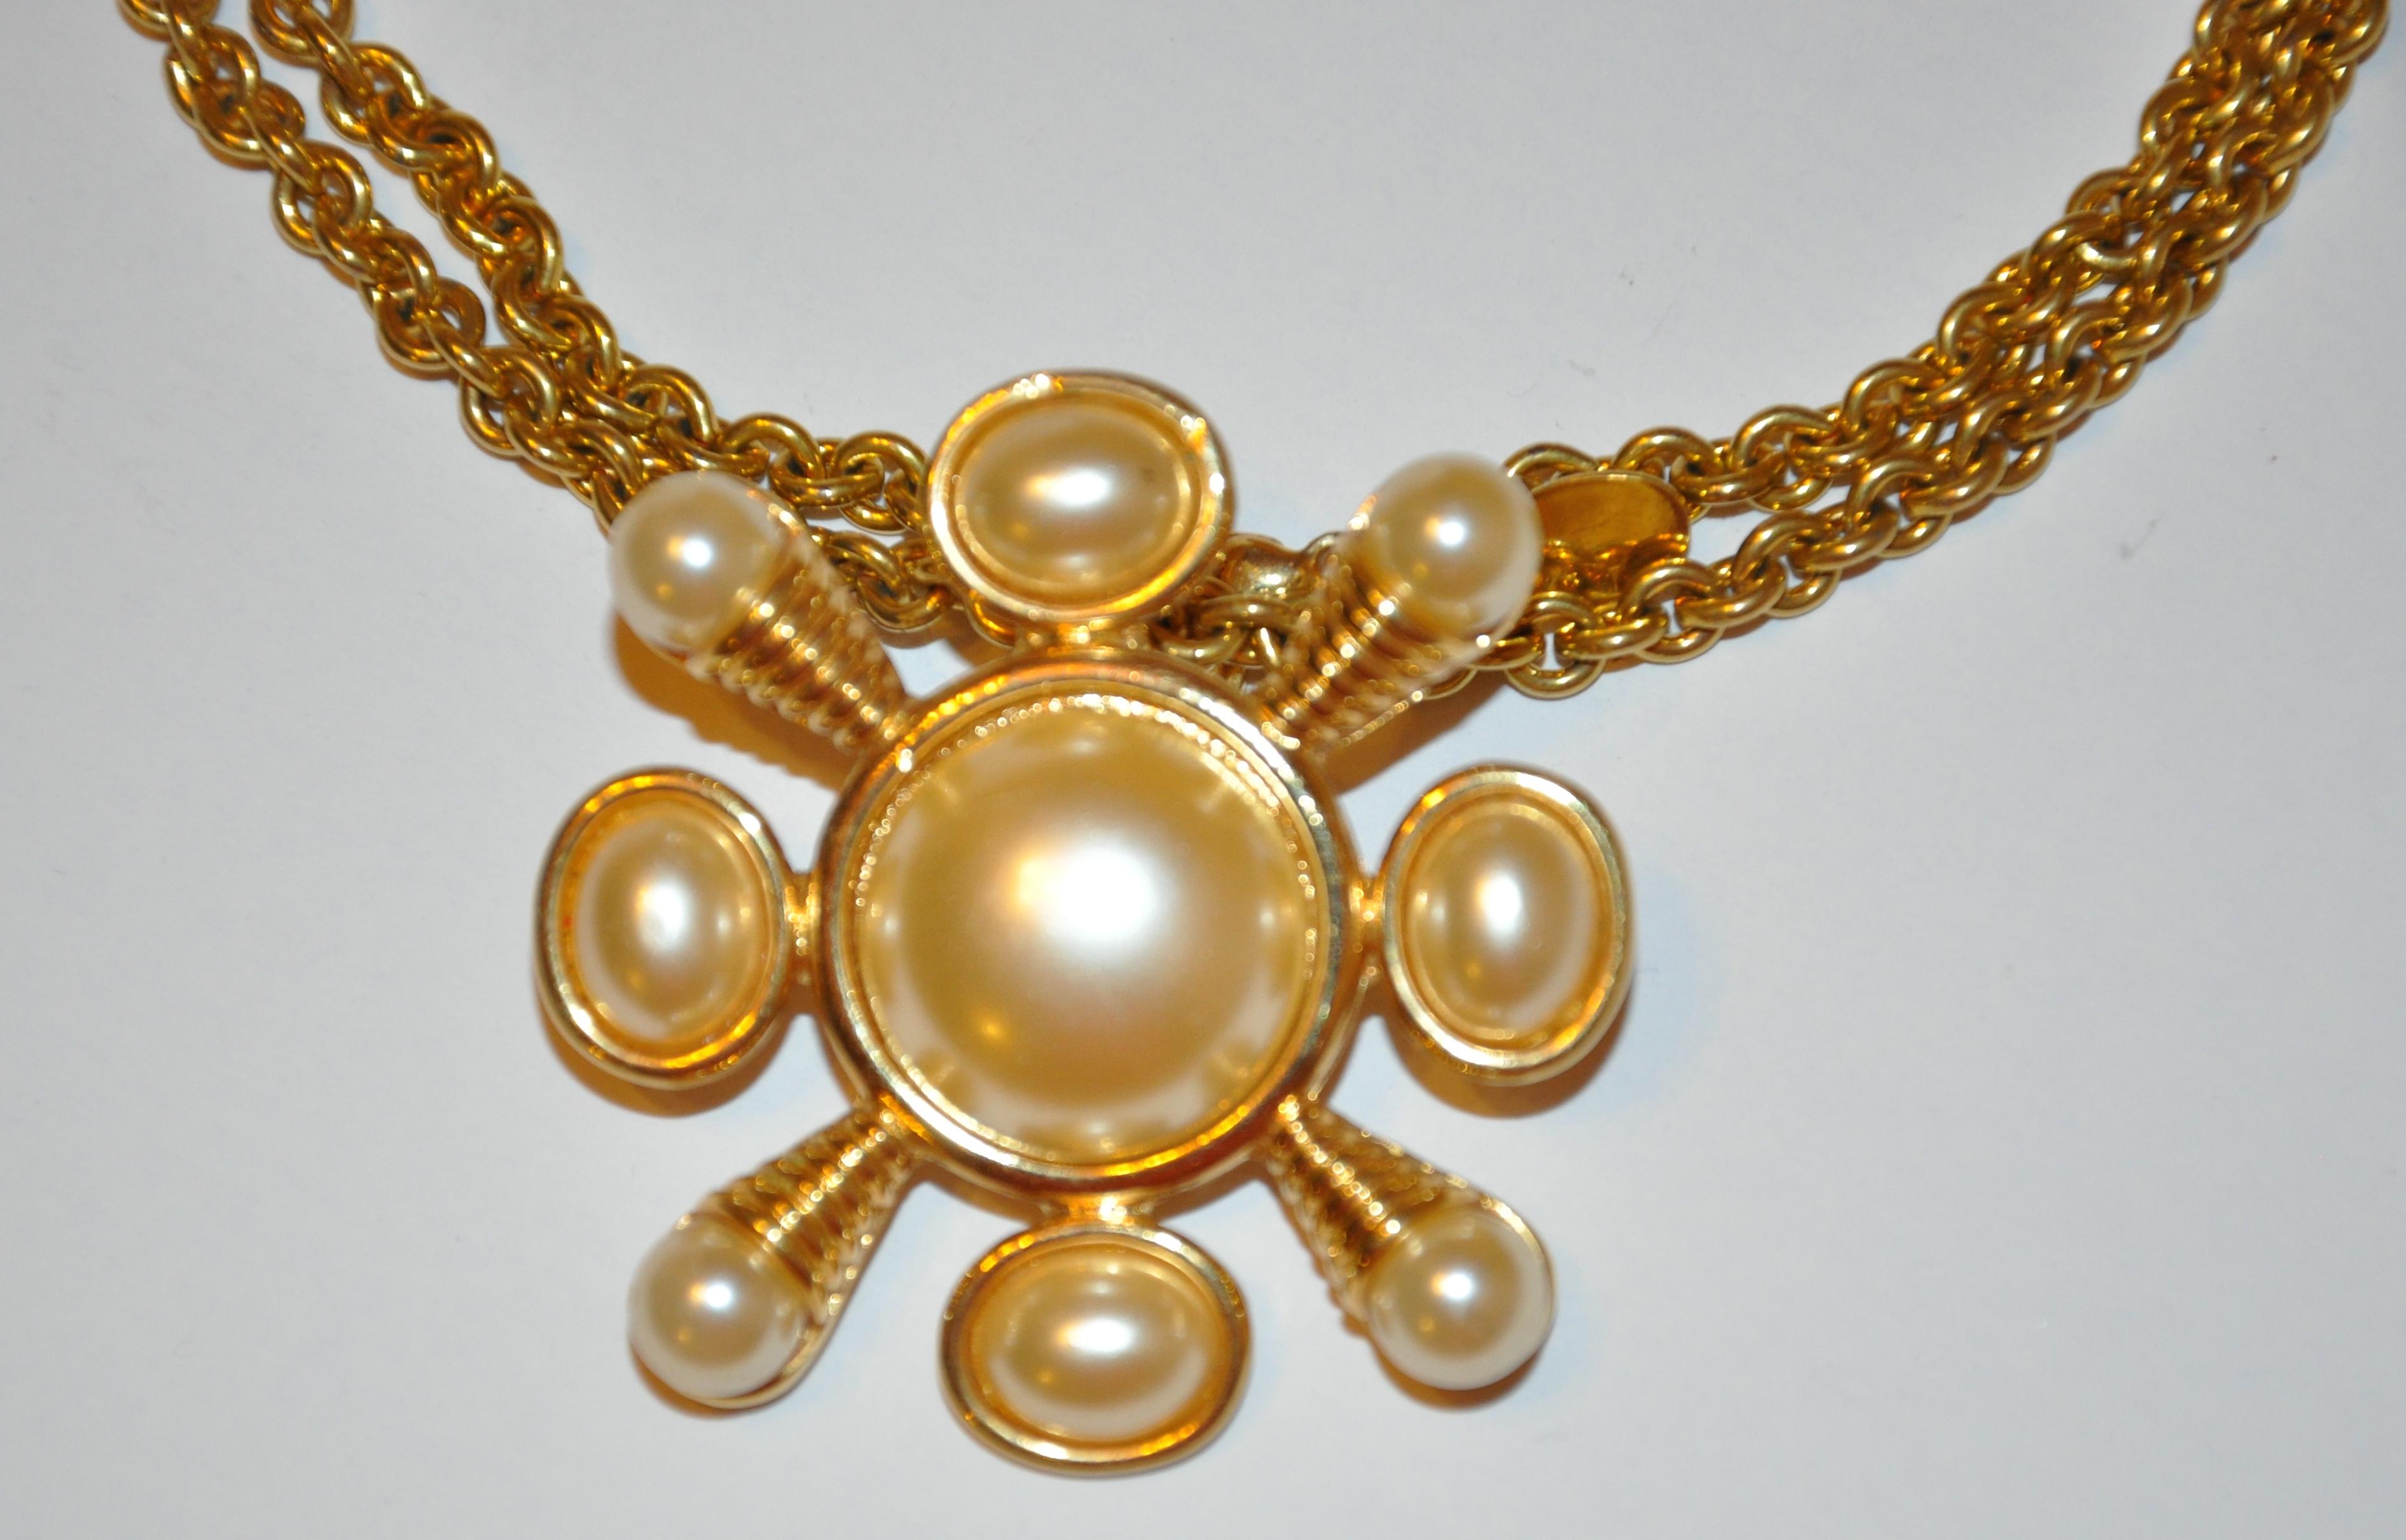        Kenneth Jay Lane geätzte vergoldete Gold Vermeil Hardware akzentuiert mit Multi-Size-Perlen-ähnliche Verzierungen, hat die optionale Wahl der als Anhänger oder getragen werden, wie eine Brosche für Ihren Wunsch. Die Brosche selbst misst 1 6/8